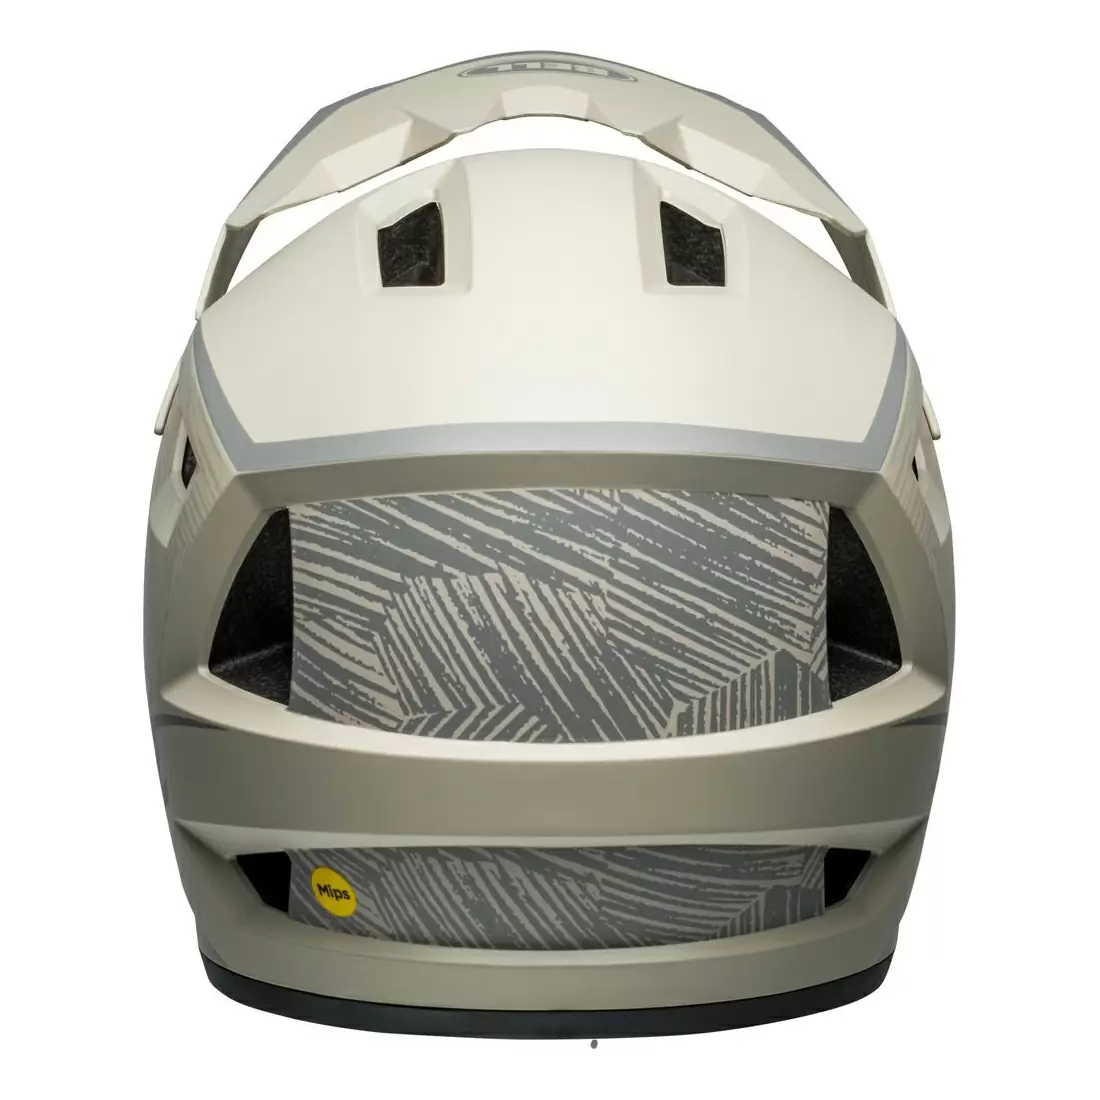 Sanction 2 DLX MIPS Full Face Helmet Gray Size L (57-59cm) #5